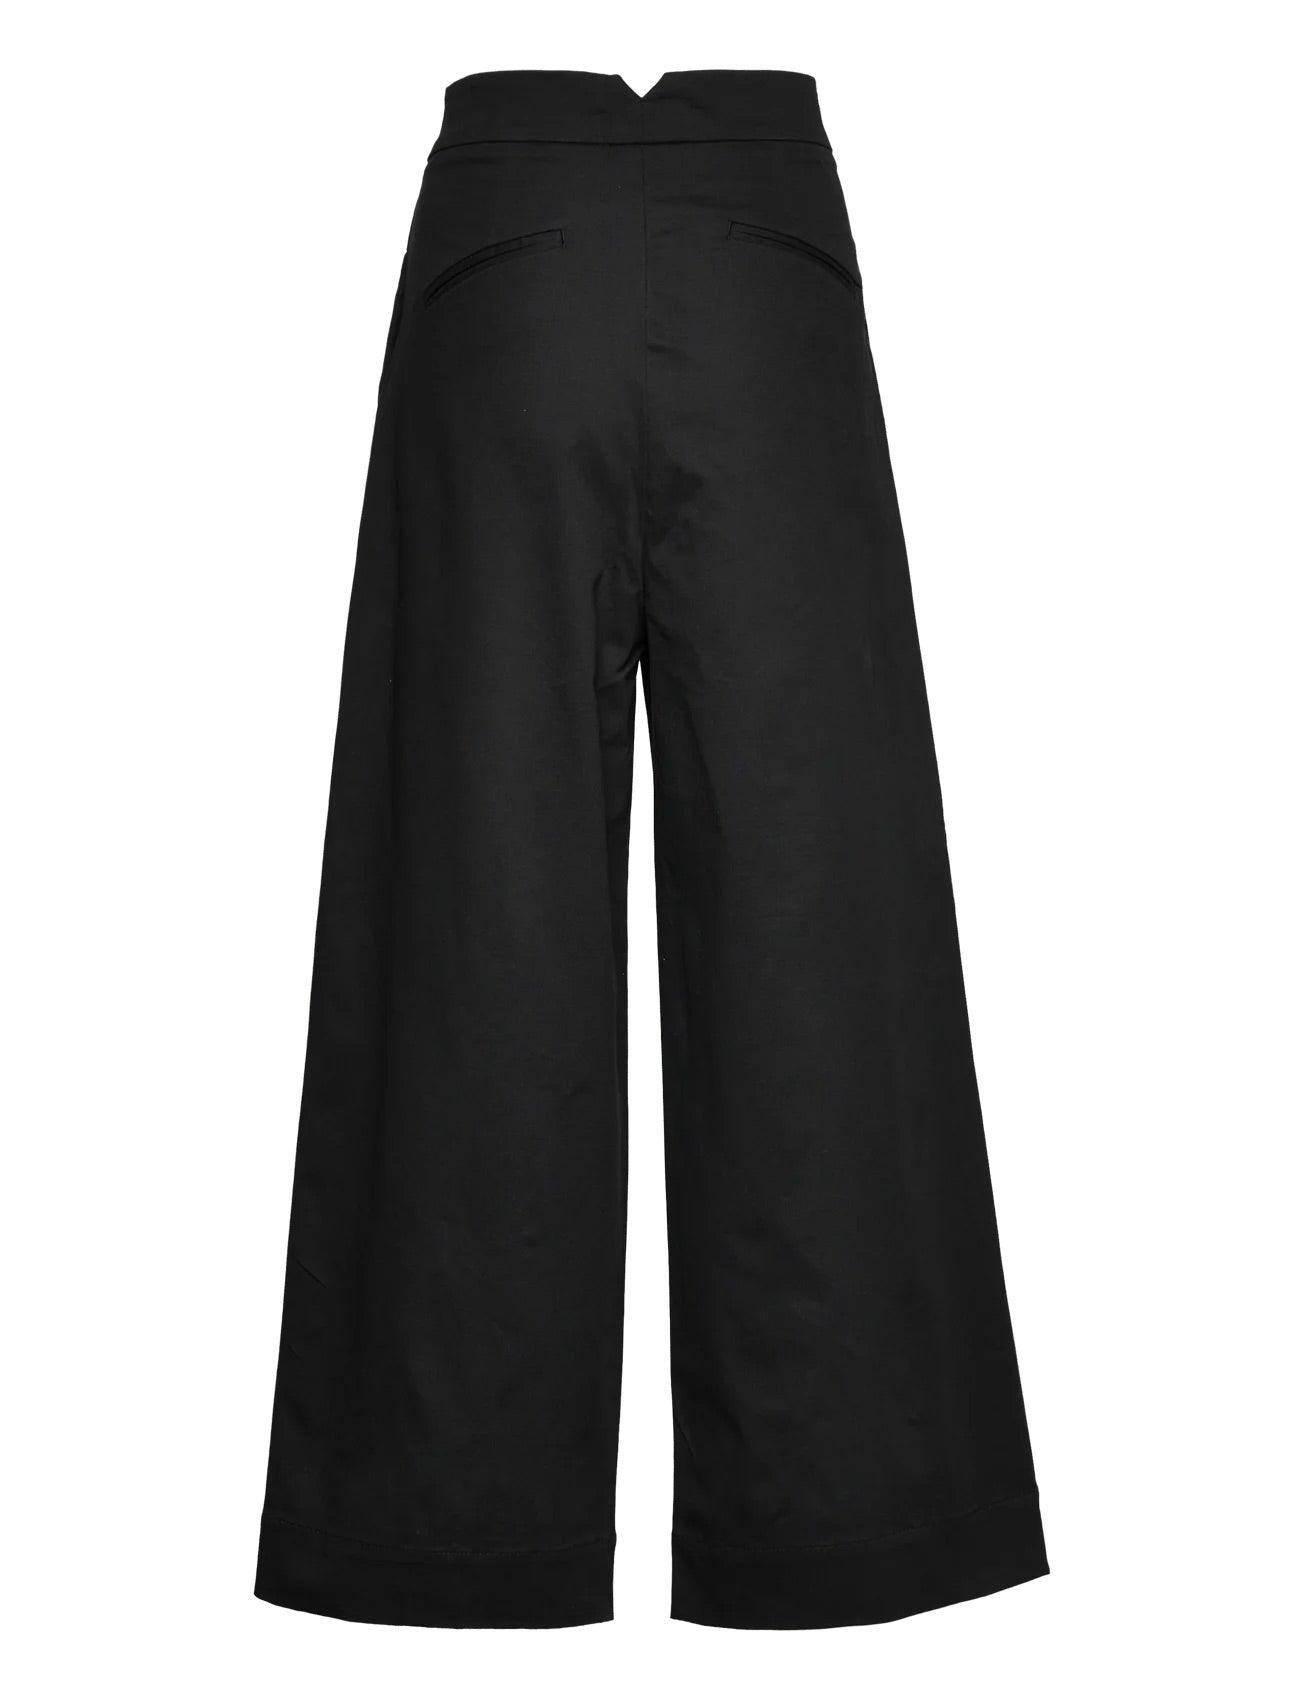 Tailored High Waist Pants Black - No22 Damplassen